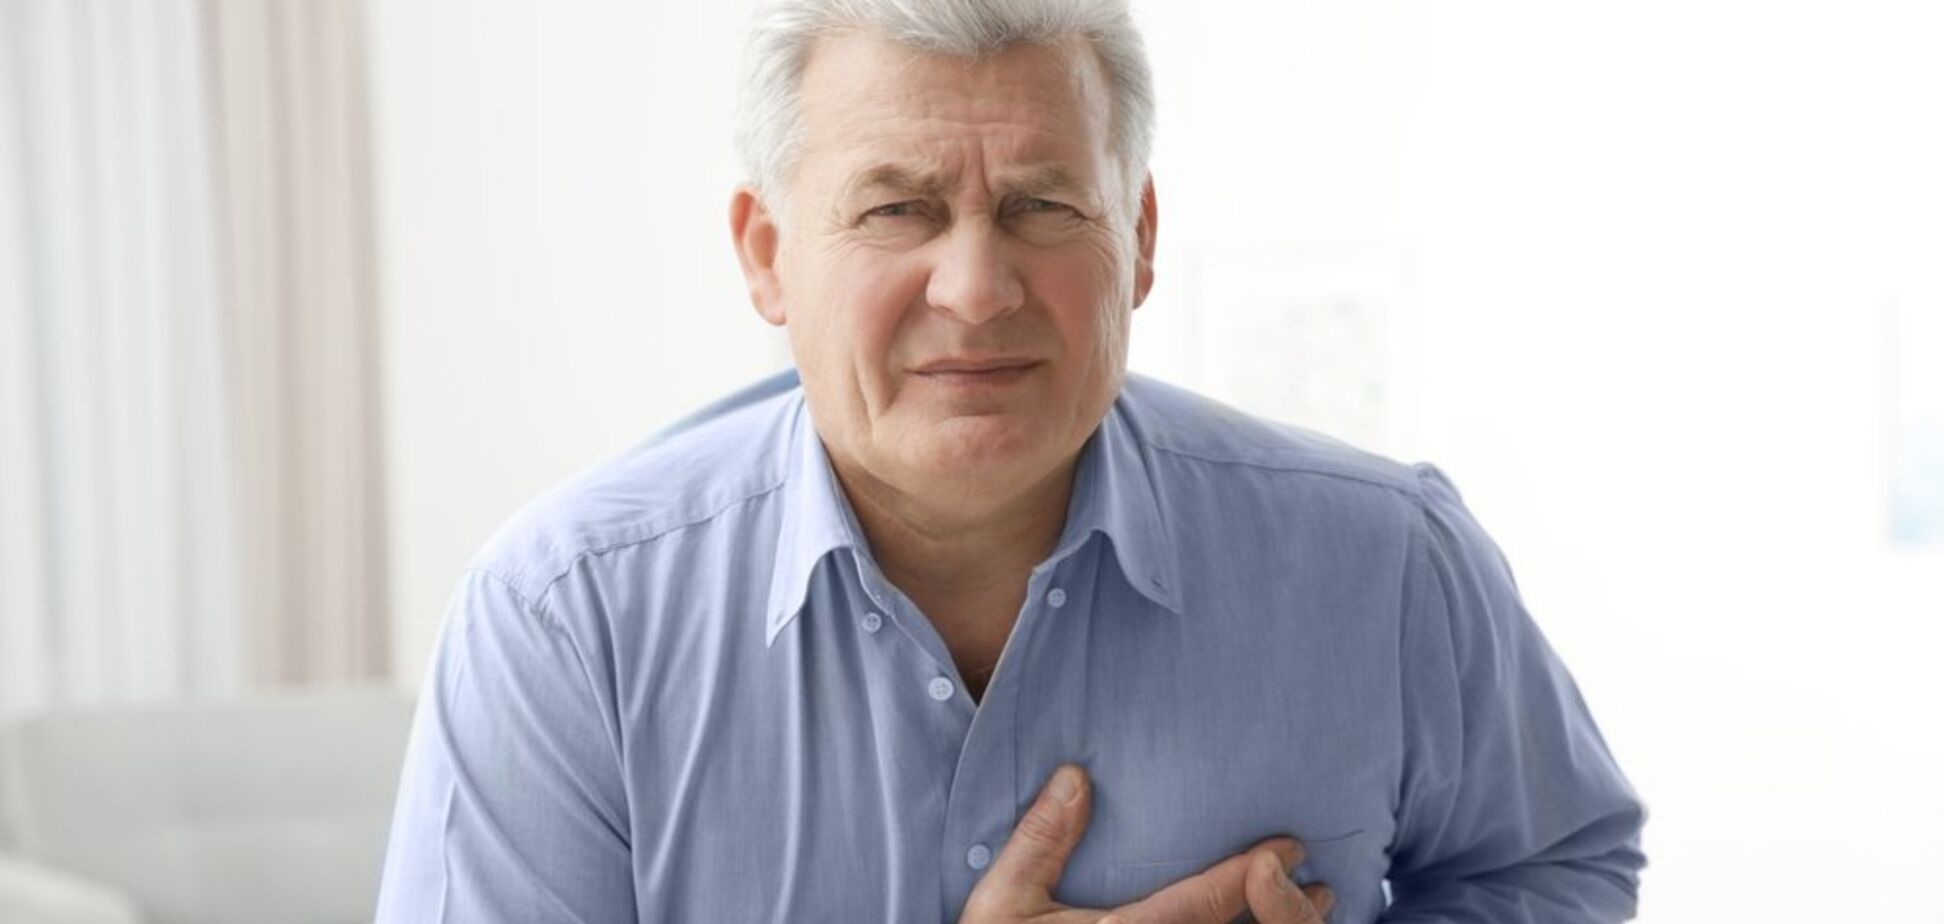 Ишемическая болезнь сердца – распространенная проблема современной кардиологии